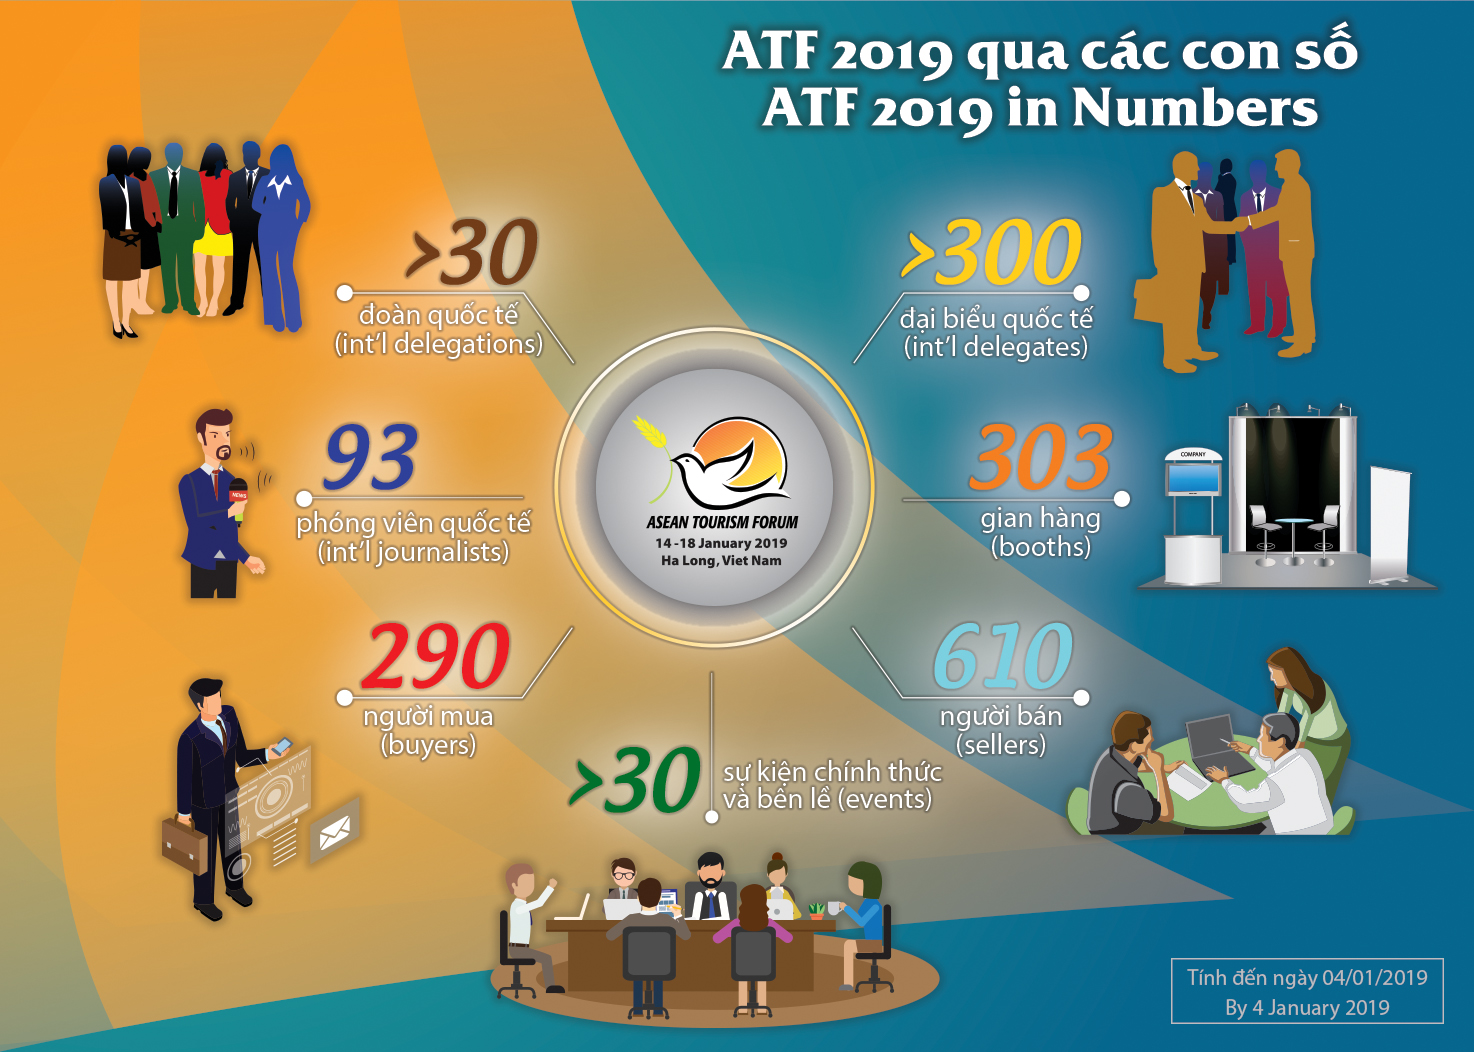 Cập nhật tình hình ATF 2019 qua các con số